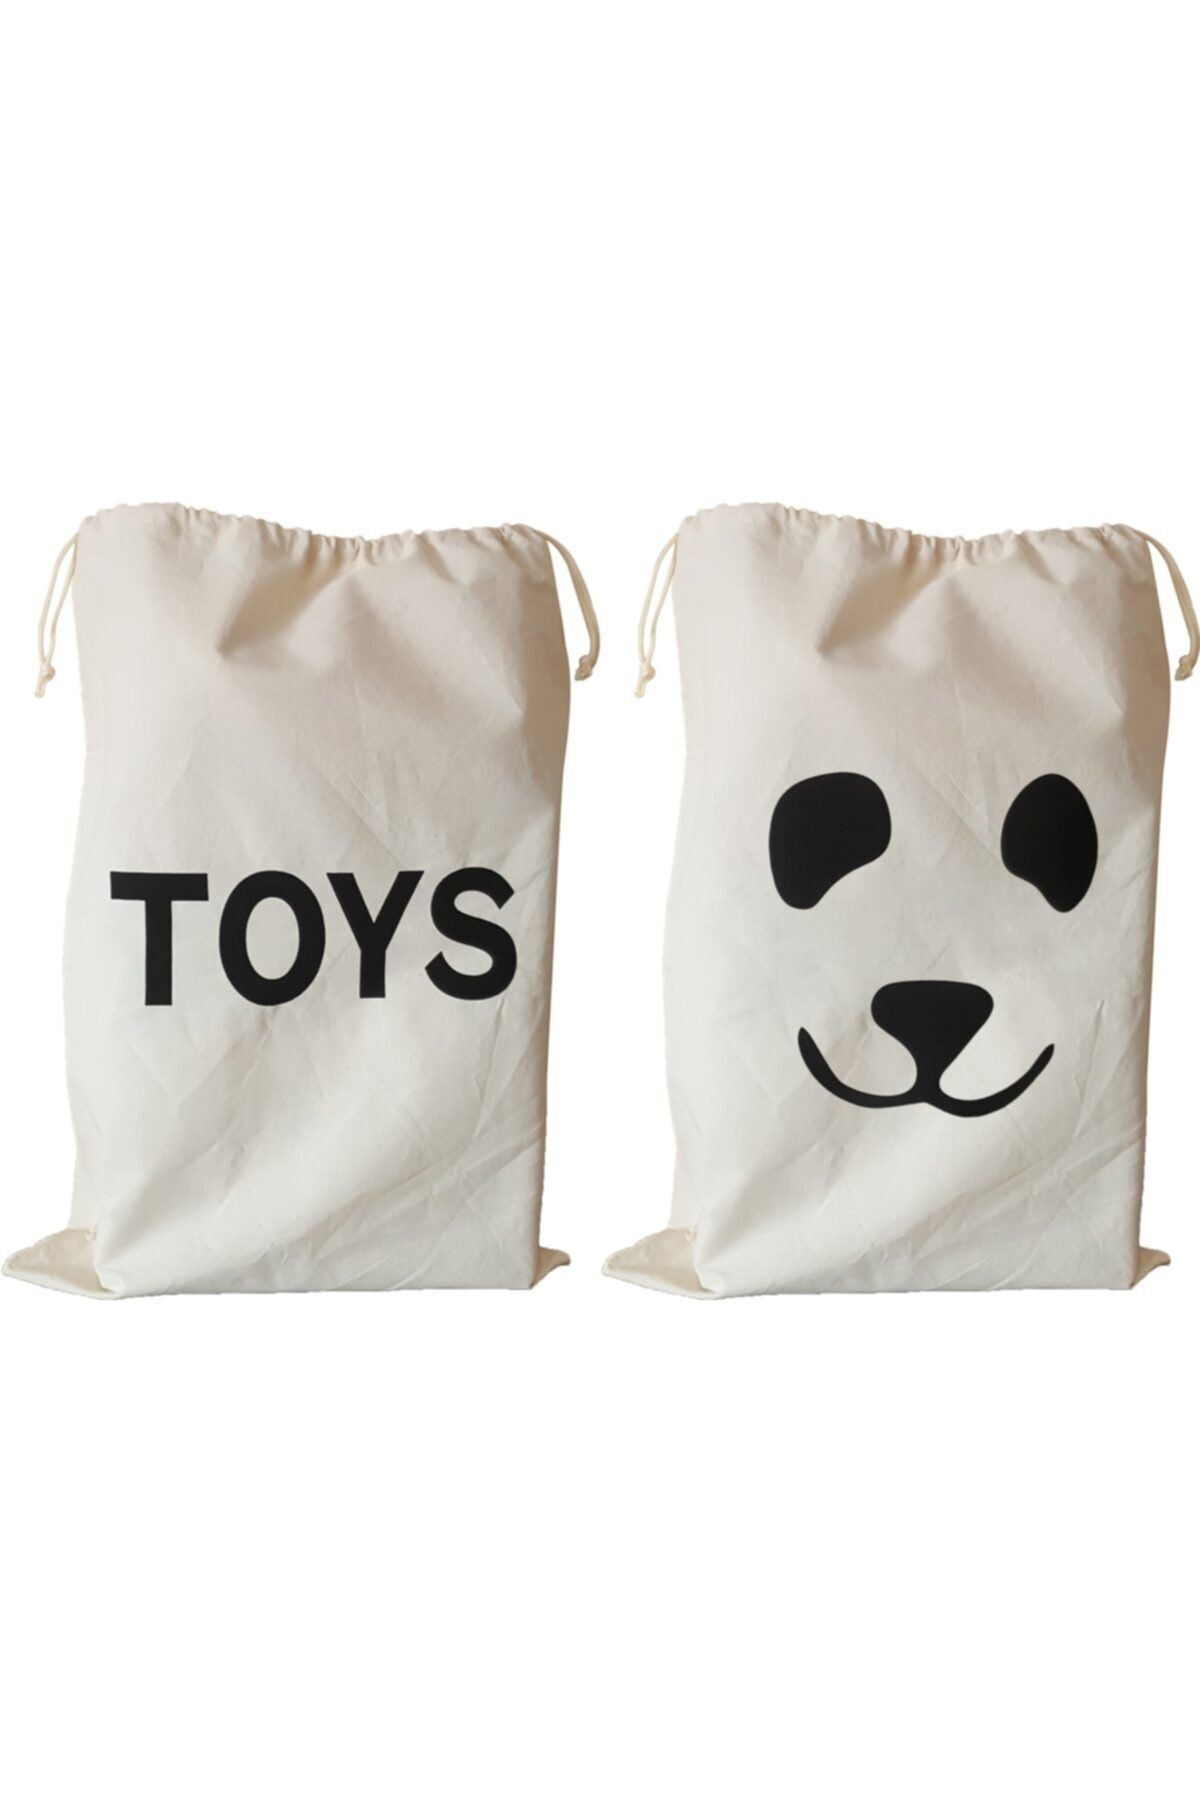 BugyBagy 50x70cm Ebadında Toys Ve Panda Figürlü 2'li Kanvas Oyuncak Ve Çamaşır Saklama Torbası